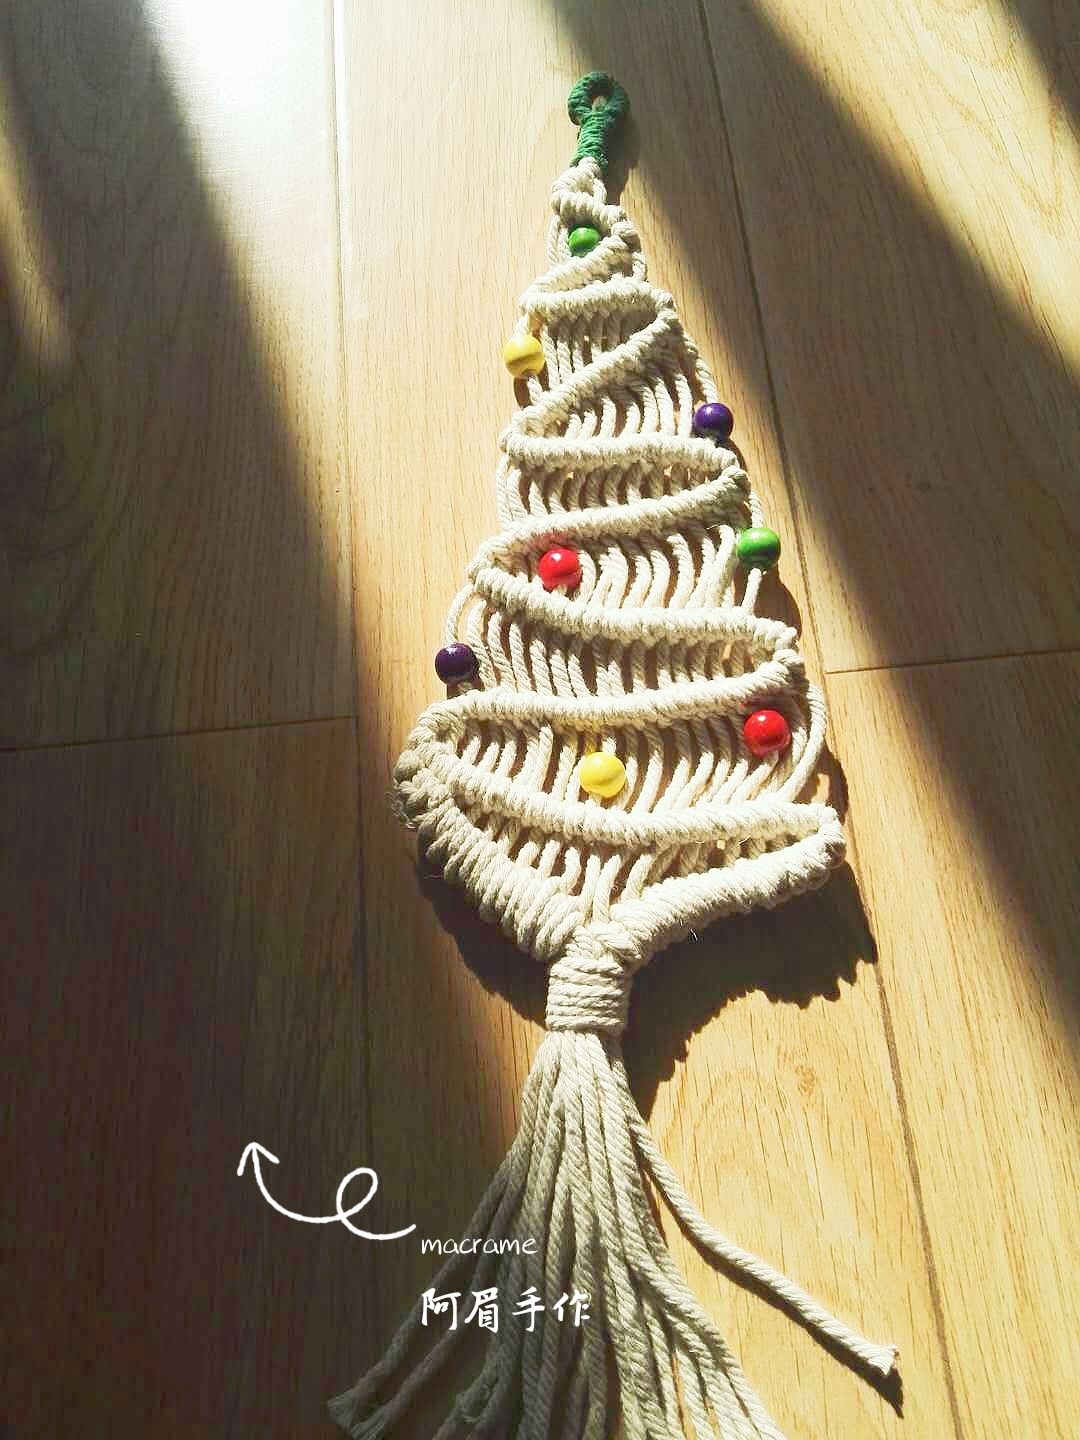 圣诞节快来了，让我们一起做圣诞树吧。